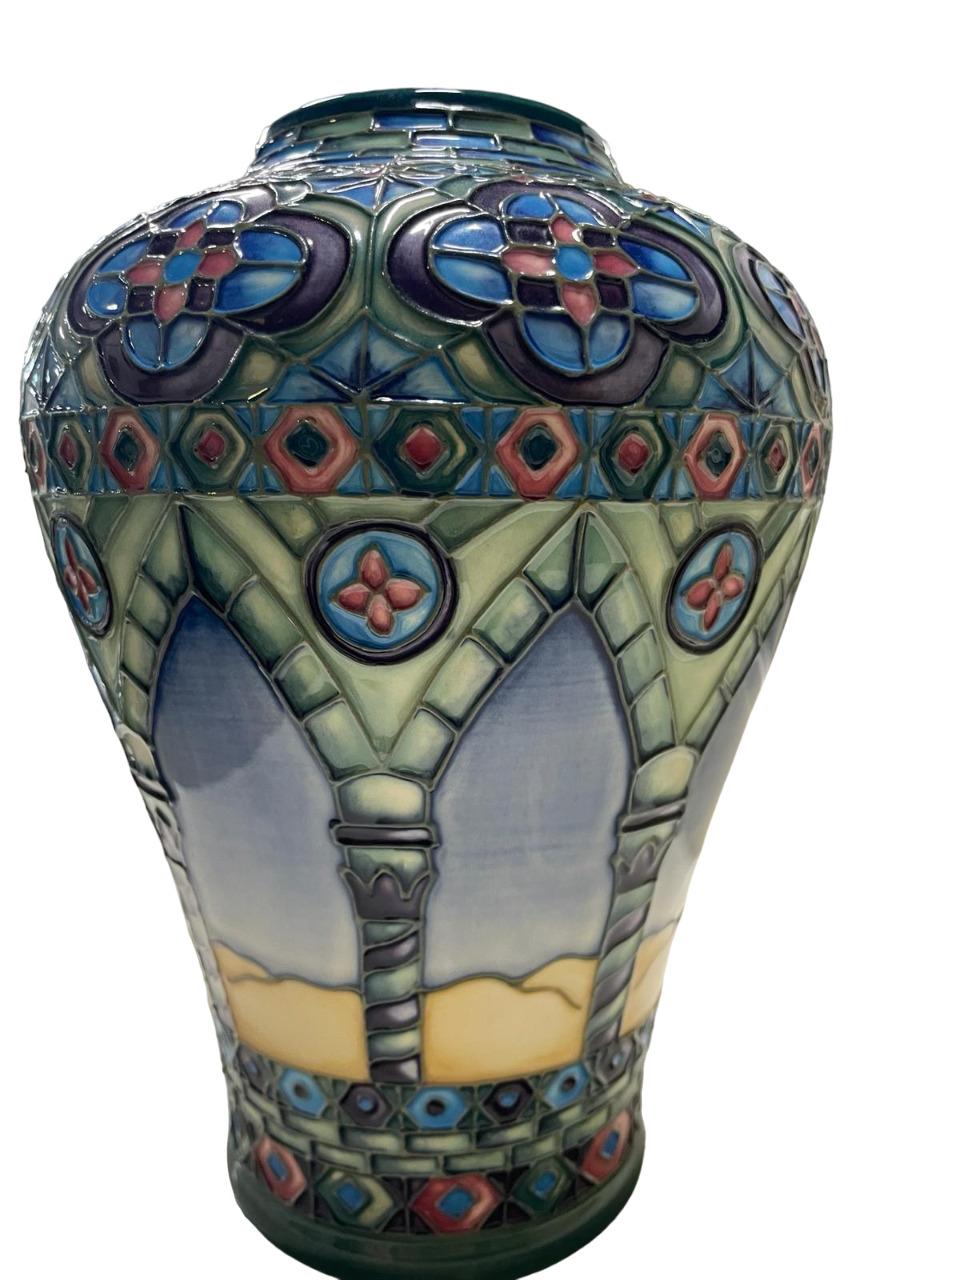 Vase moderne Moorcroft Meknes Pattern 576/9, conçu par Beverley Wilkes, marques d'usine imprimées et peintes, numéroté 66/350, sous glaçure et plume d'or.
Magnifique vase arabe Moorcroft 'Meknes Vase' conçu par Beverley Wilkes, avec un décor de